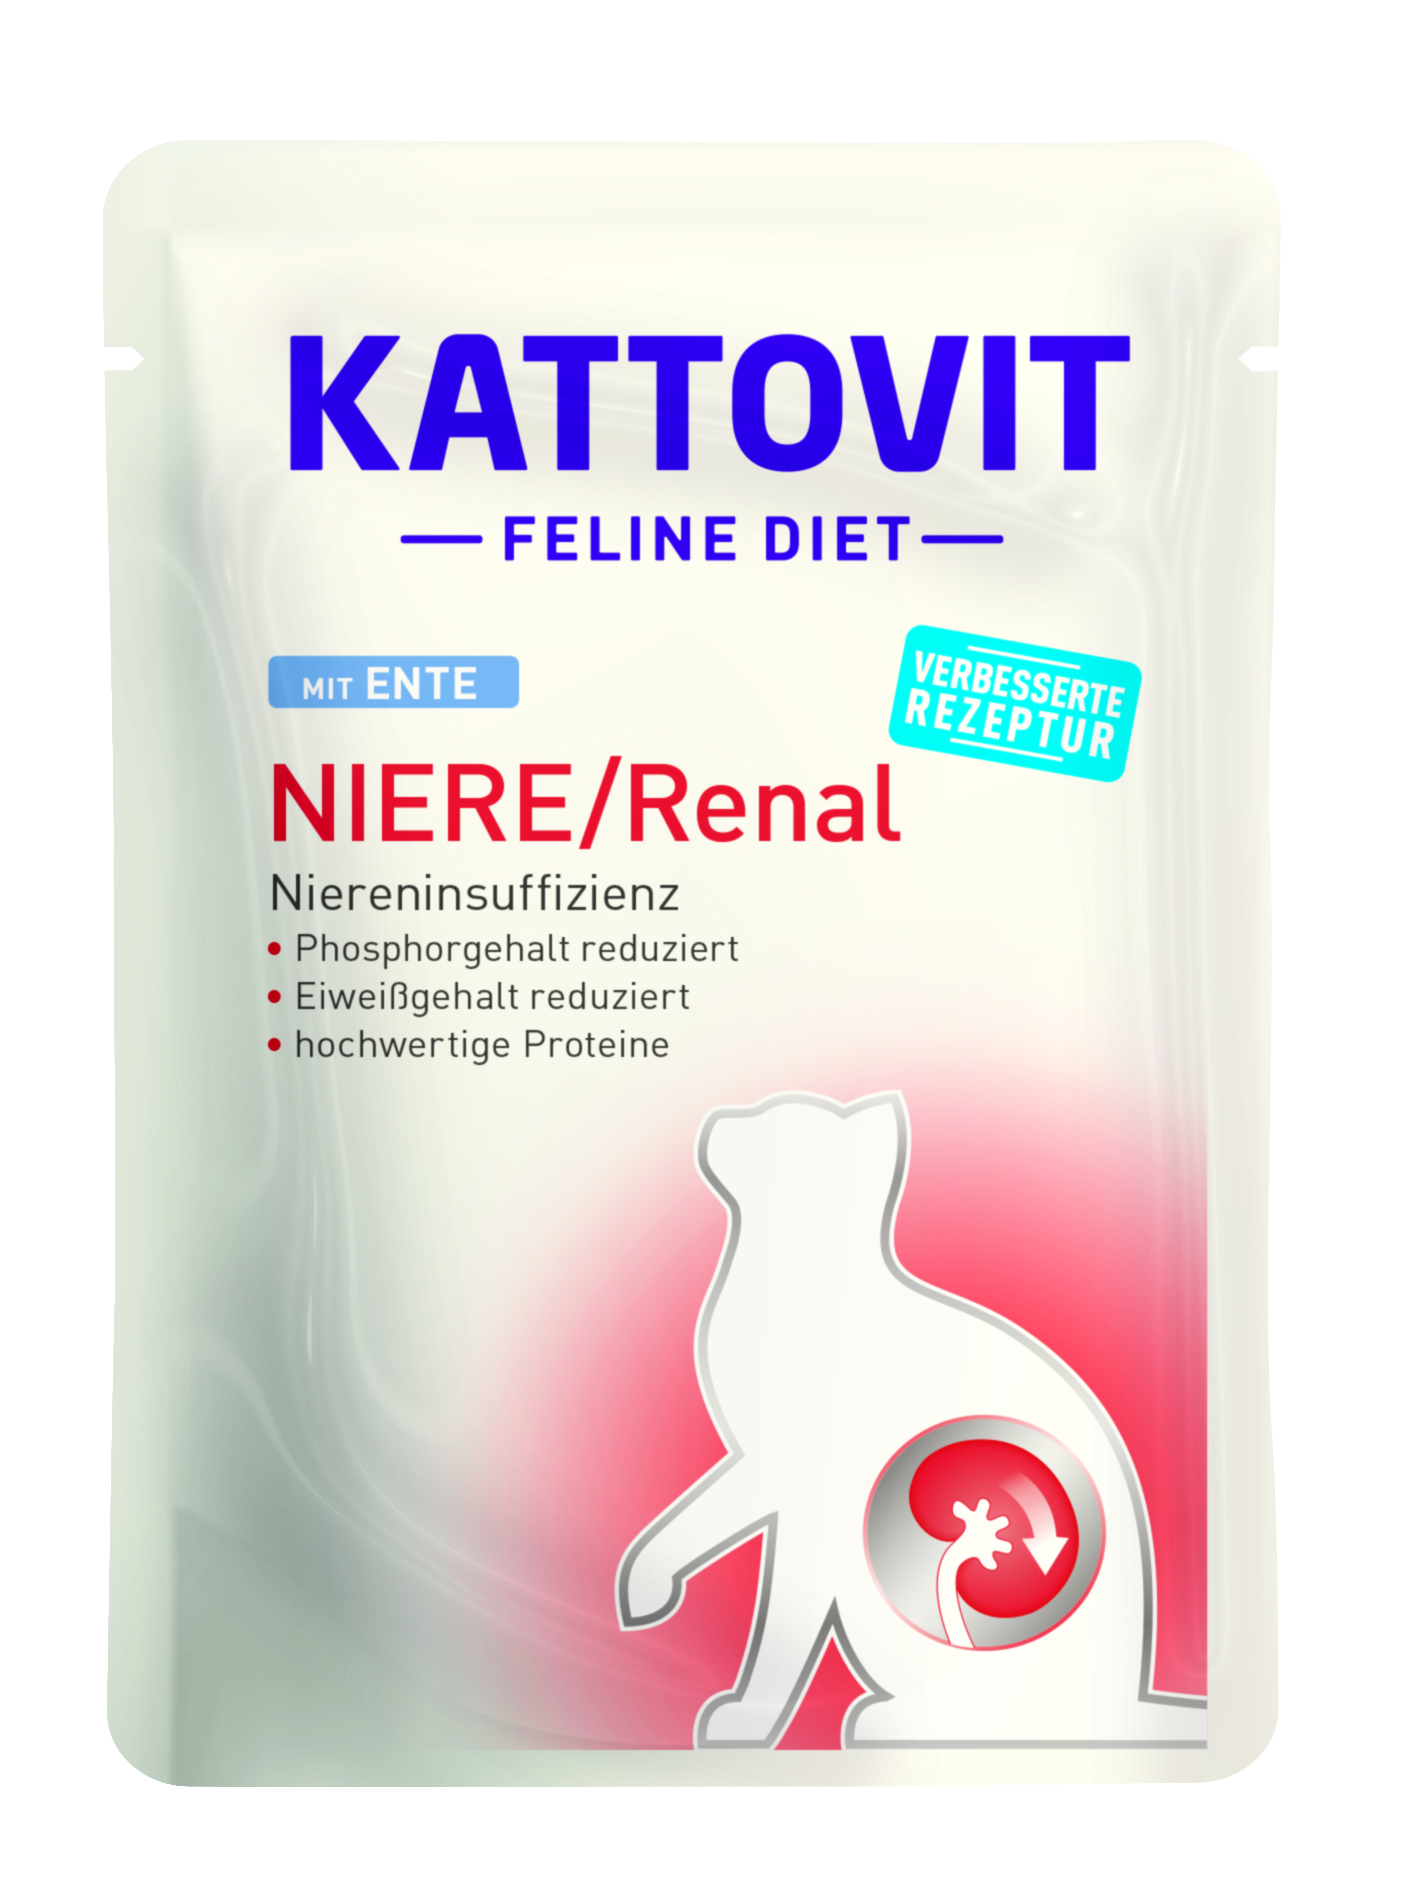 Finnern PB Kattovit Feline Diet Niere/Renal Ente 85g